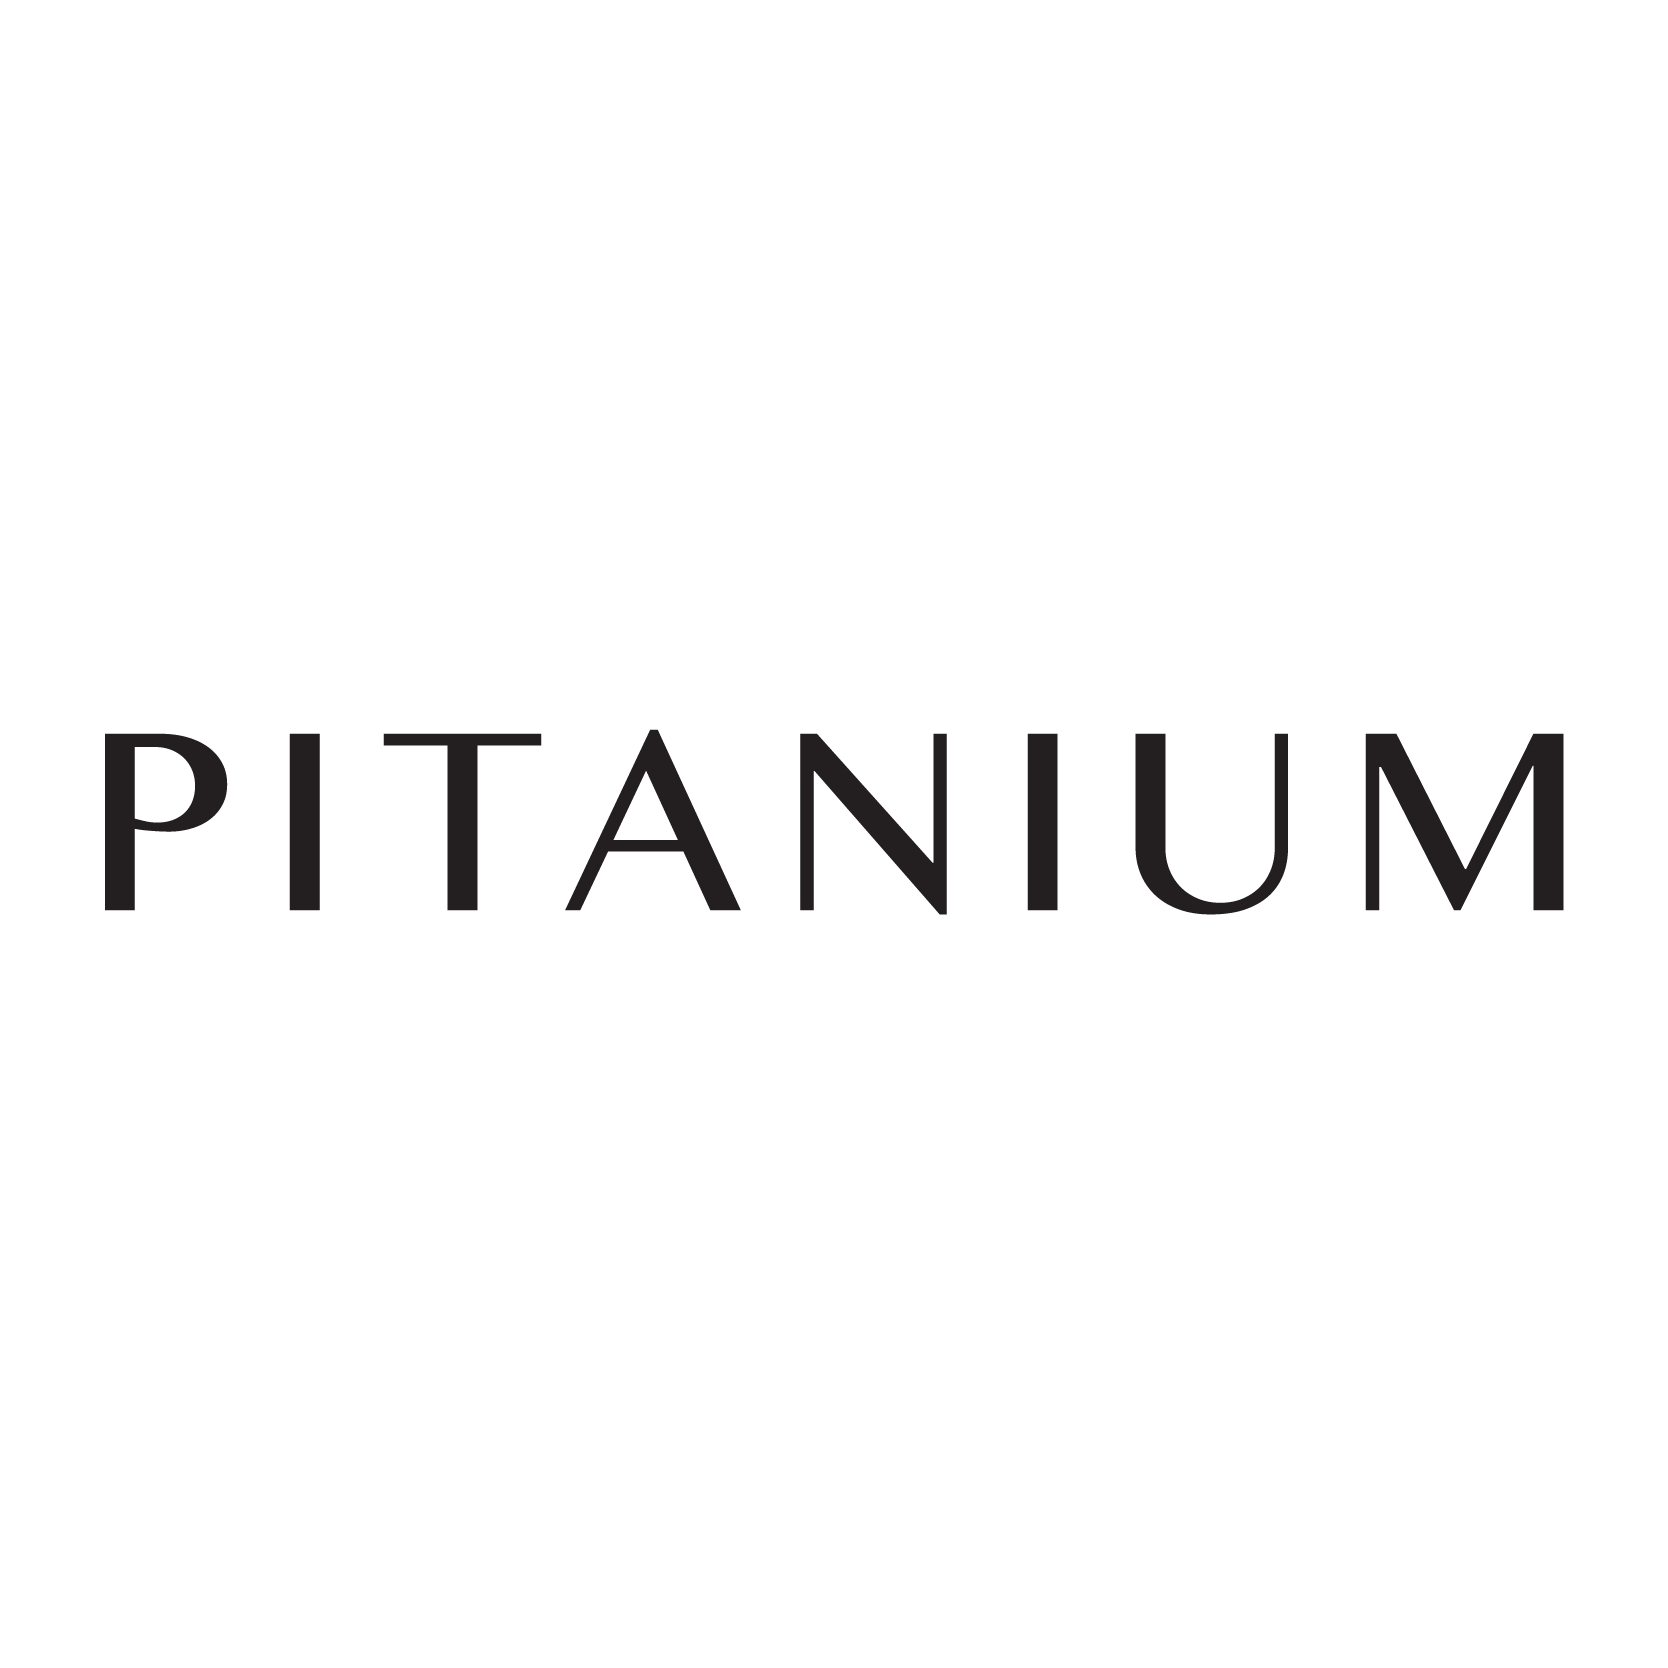 Pitanium (coming soon)